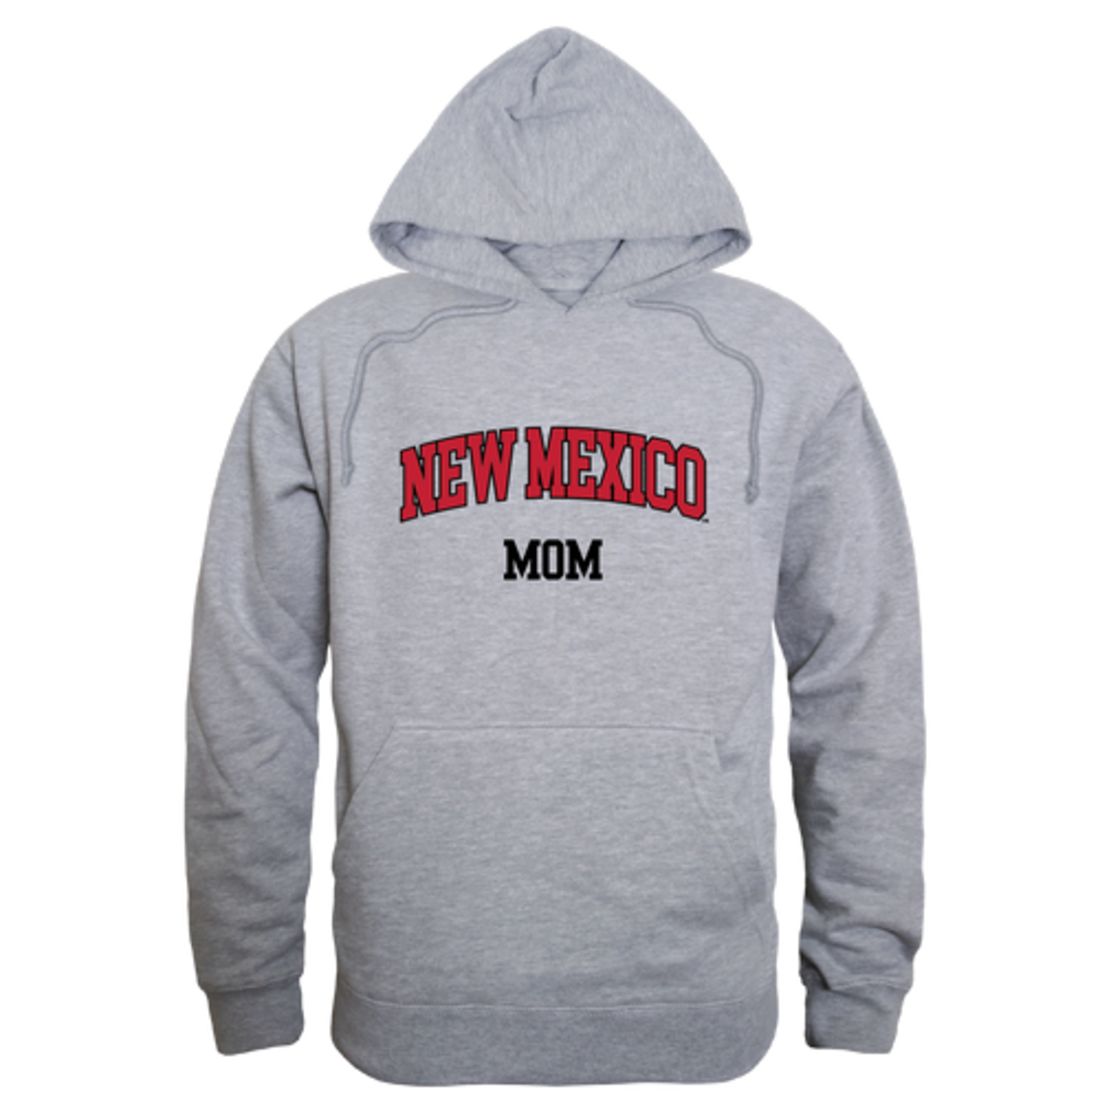 UNM University of New Mexico Lobos Mom Fleece Hoodie Sweatshirts Heather Grey-Campus-Wardrobe